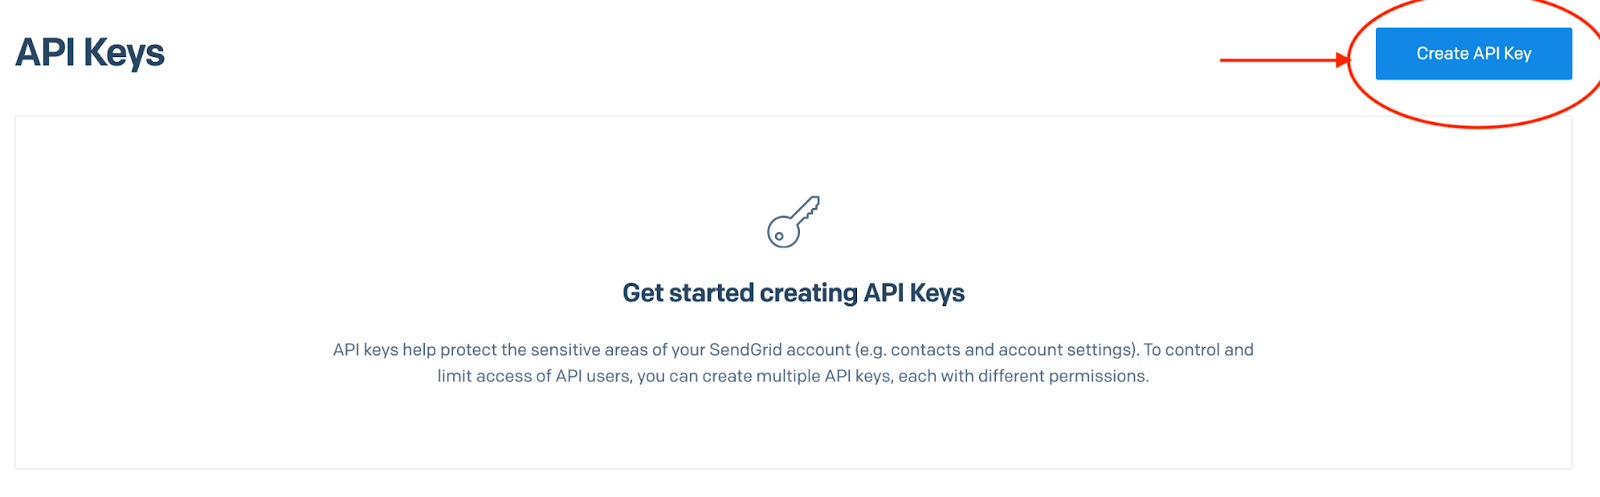 Create a SendGrid API key, step 1.